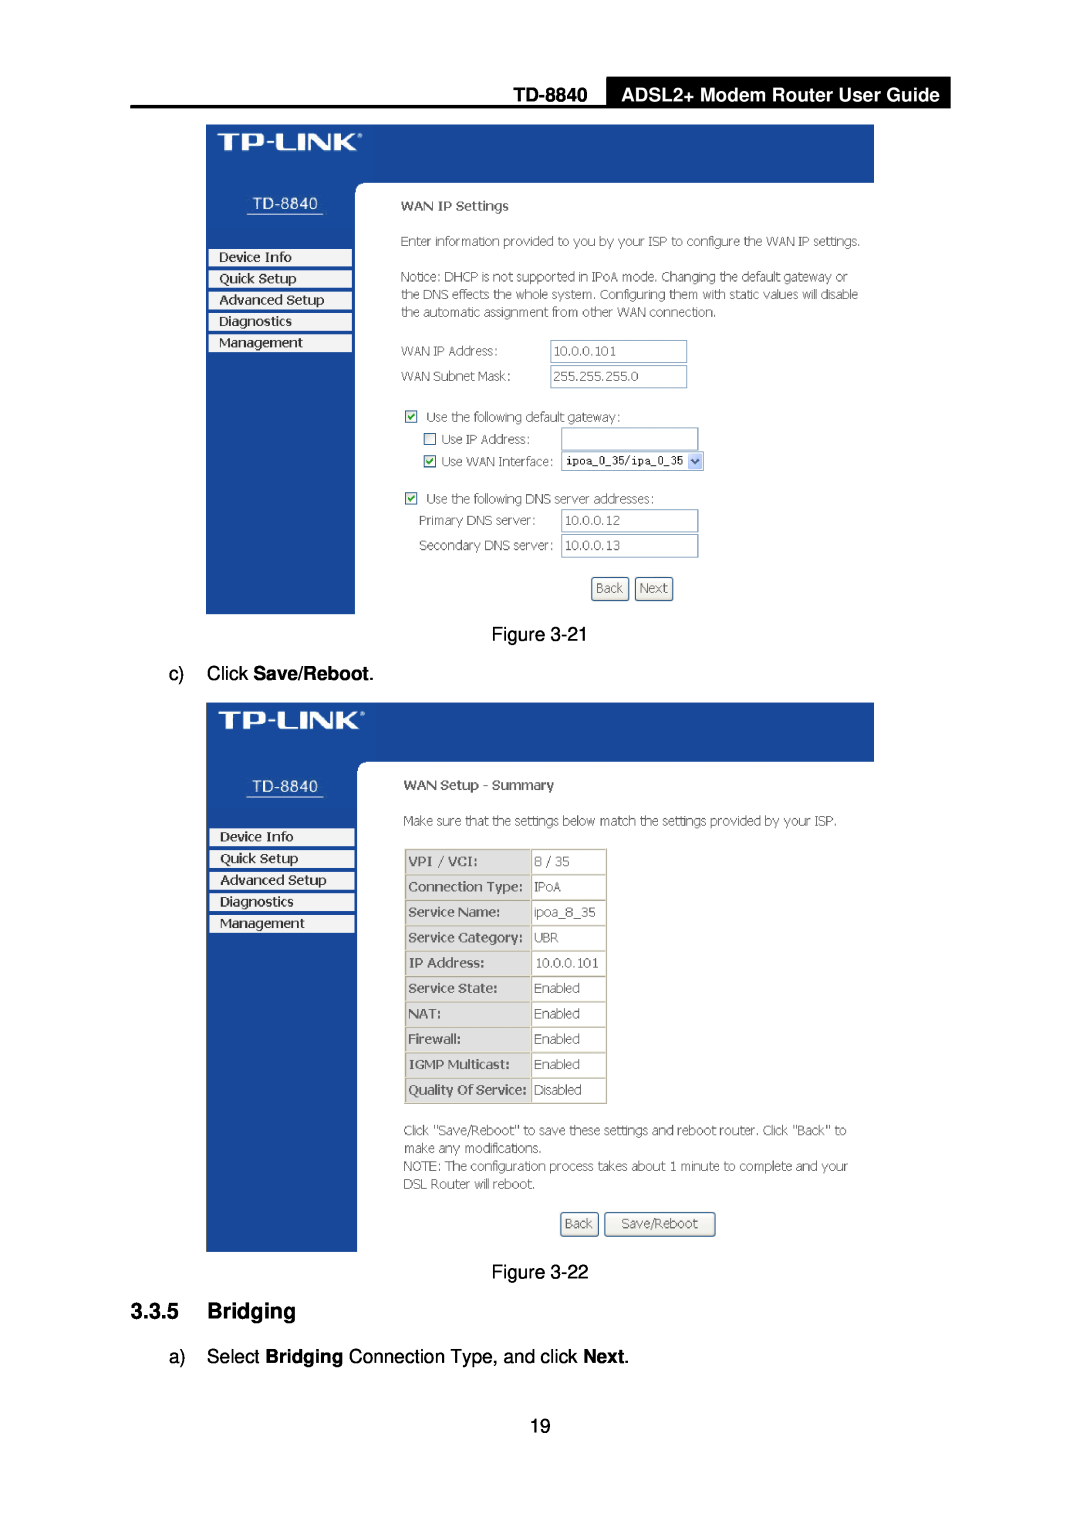 TP-Link TD-8840 manual 3.3.5Bridging, ADSL2+ Modem Router User Guide, cClick Save/Reboot 